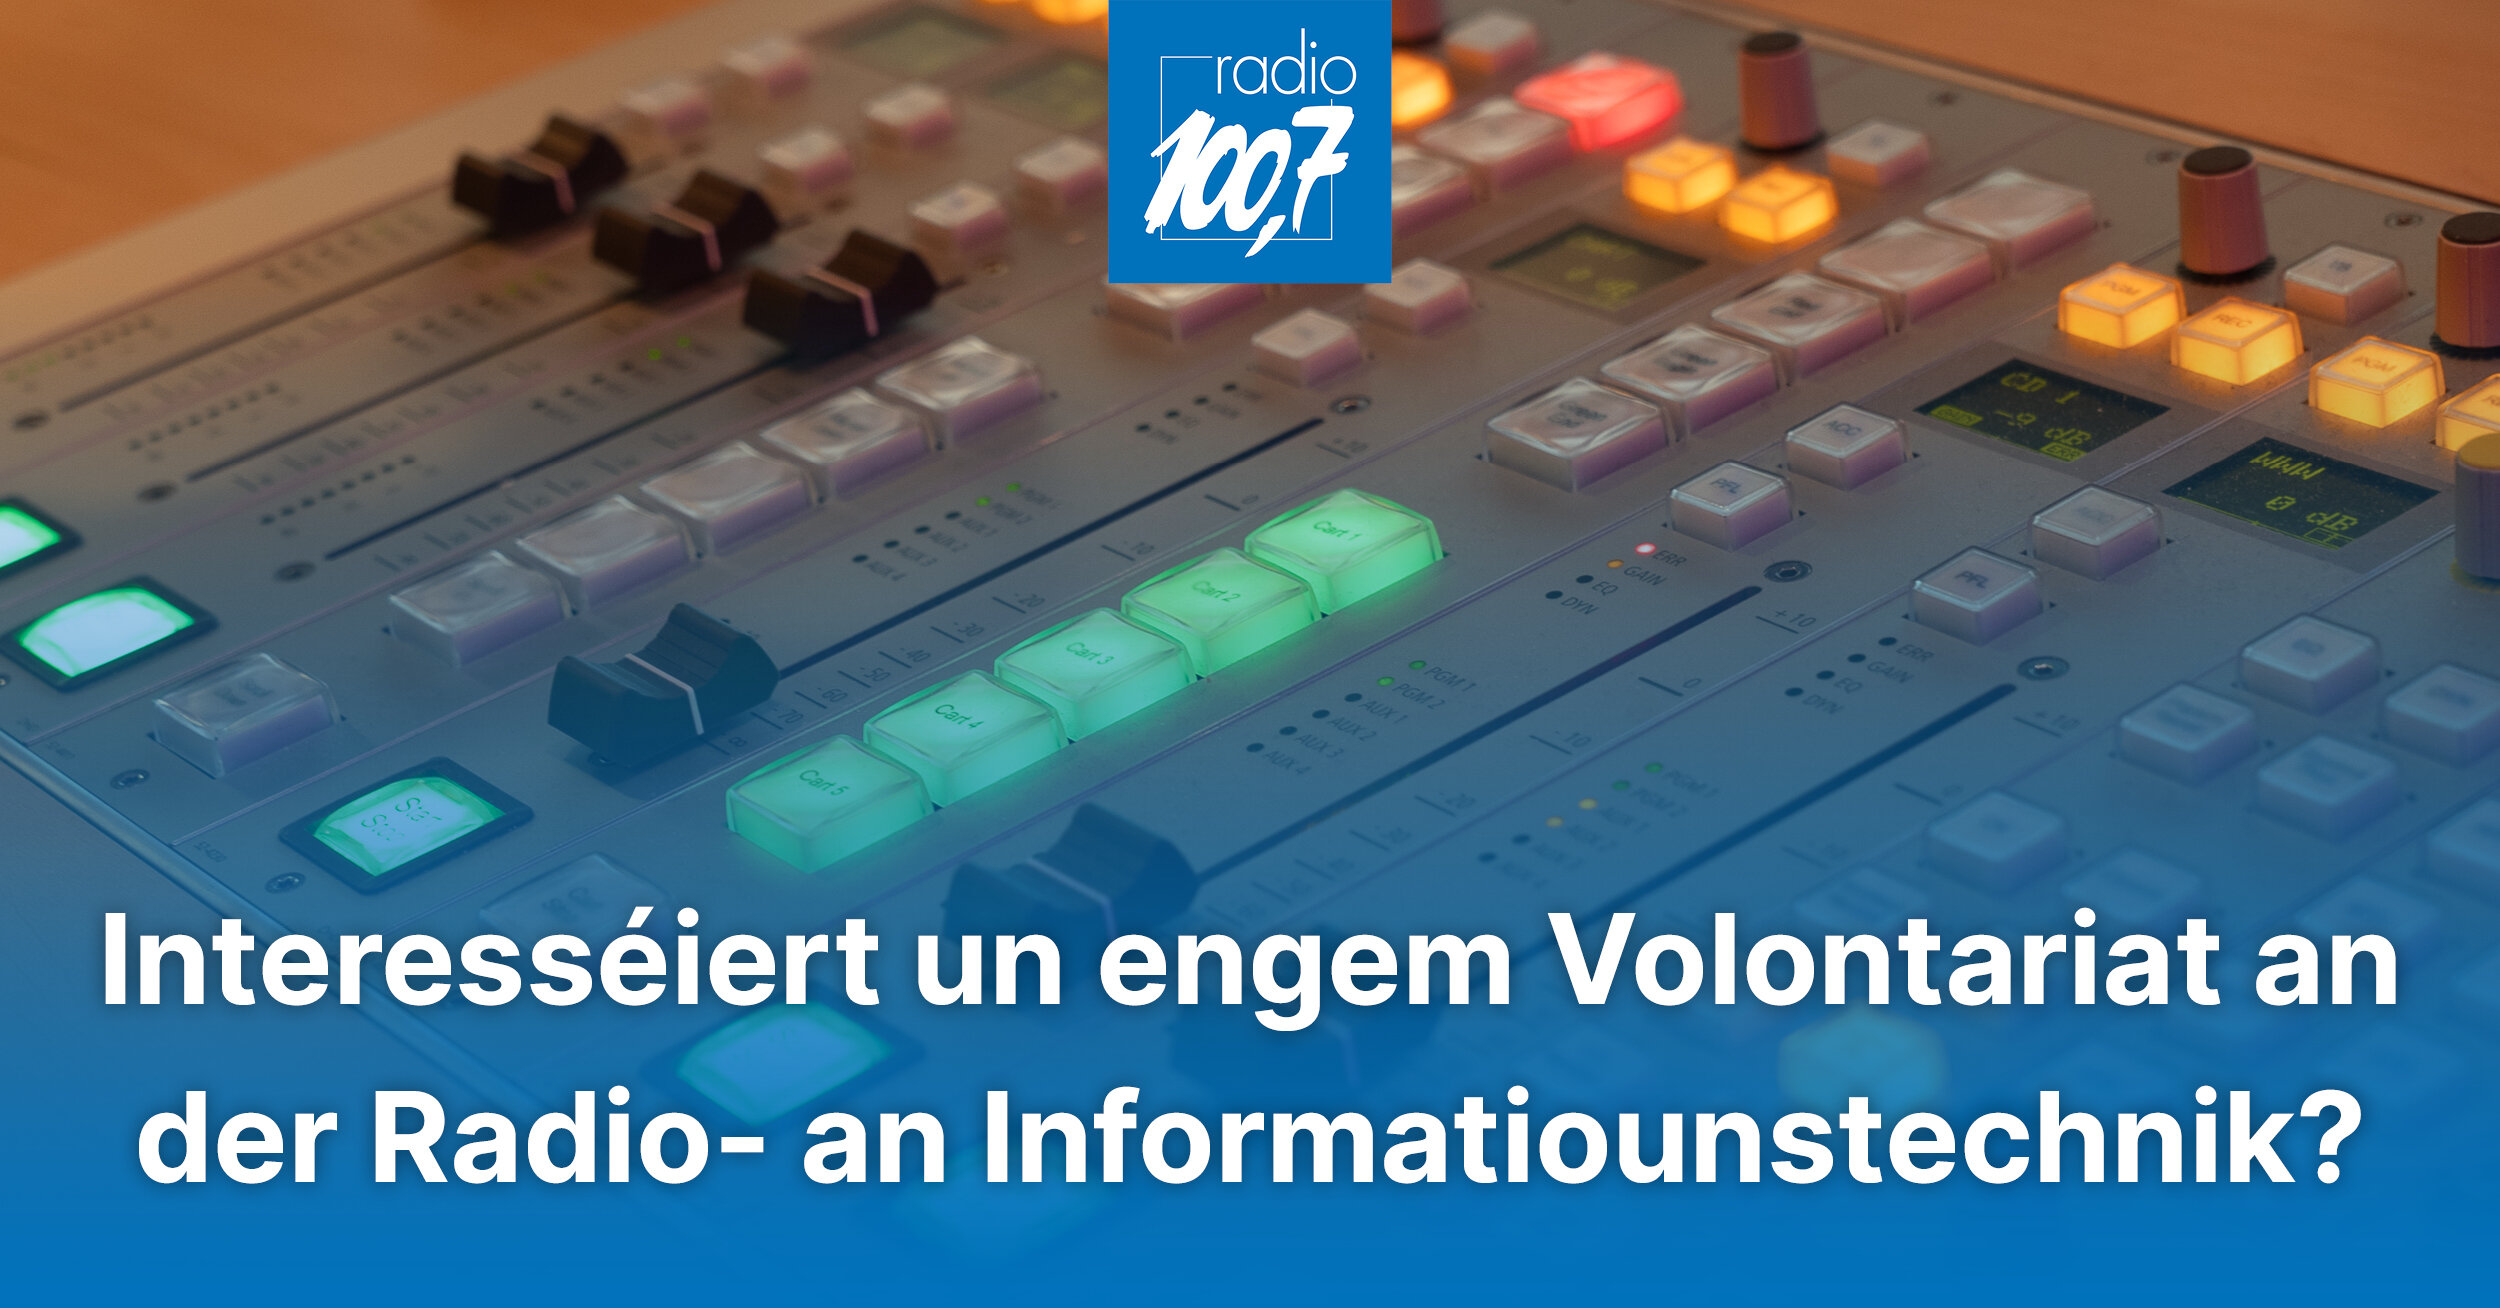 Annonce: Volontariat an der Radio- an Informatiounstechnik